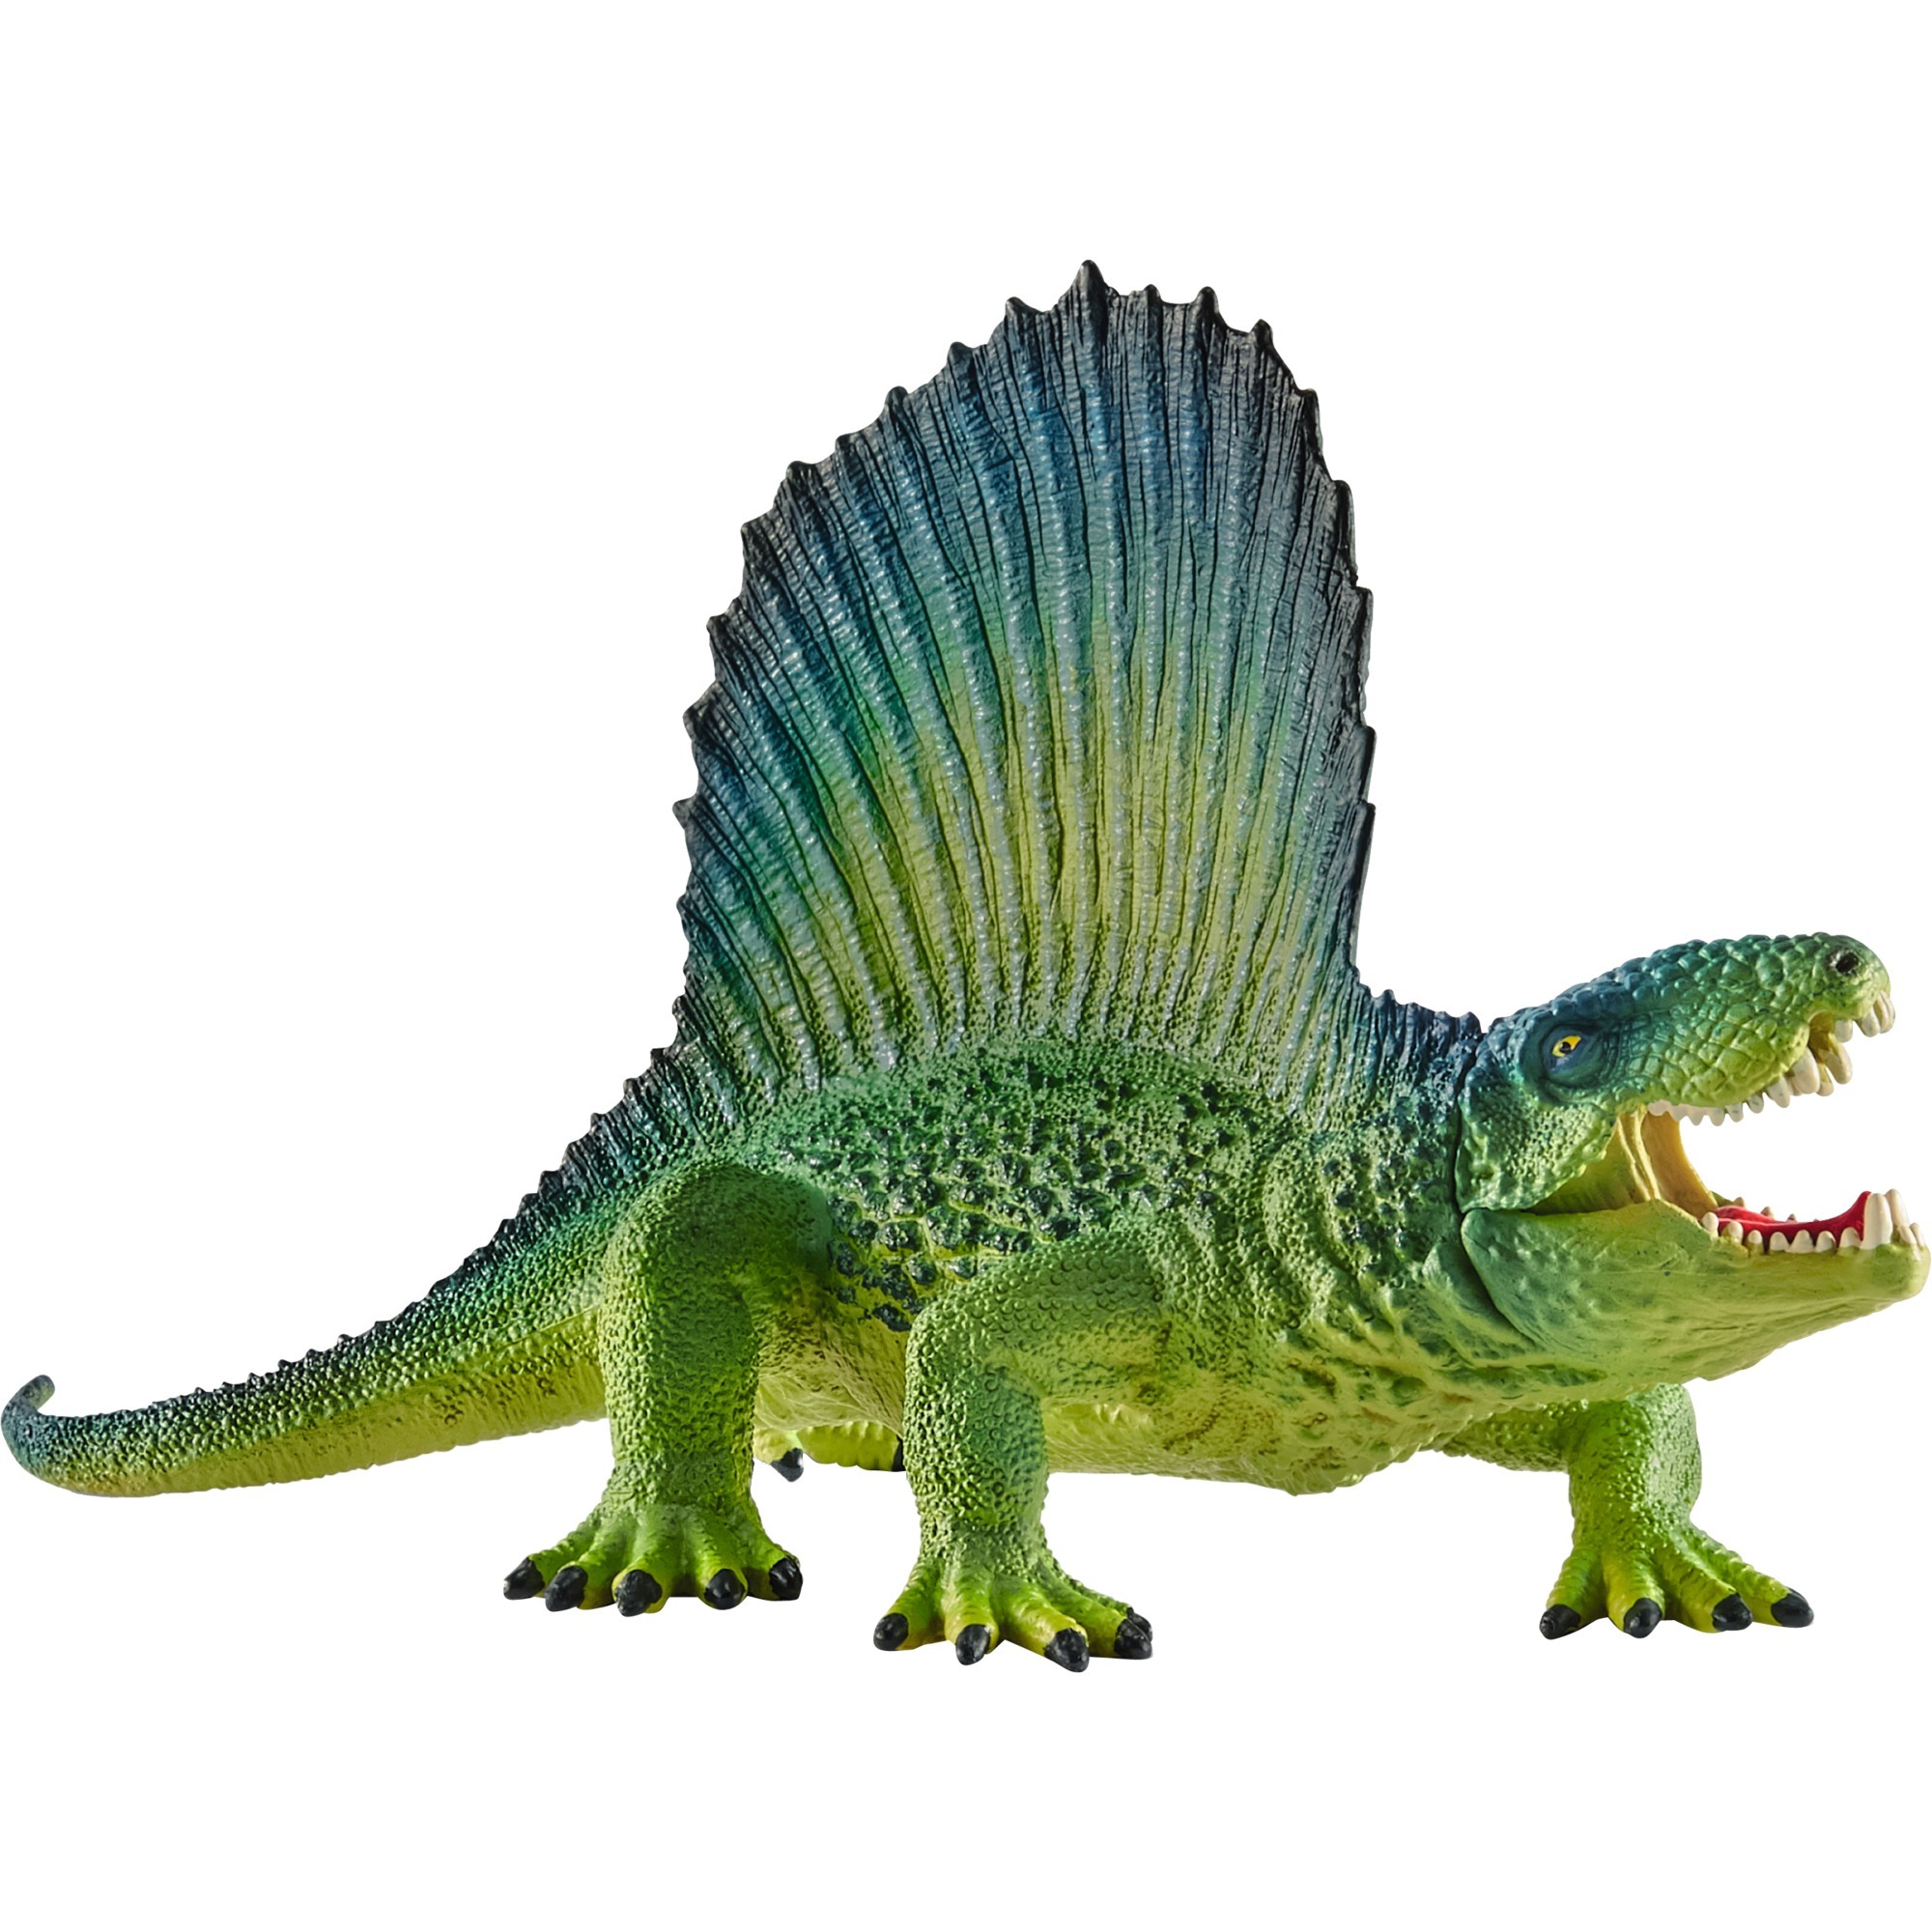 Image of Alternate - Dimetrodon, Spielfigur online einkaufen bei Alternate